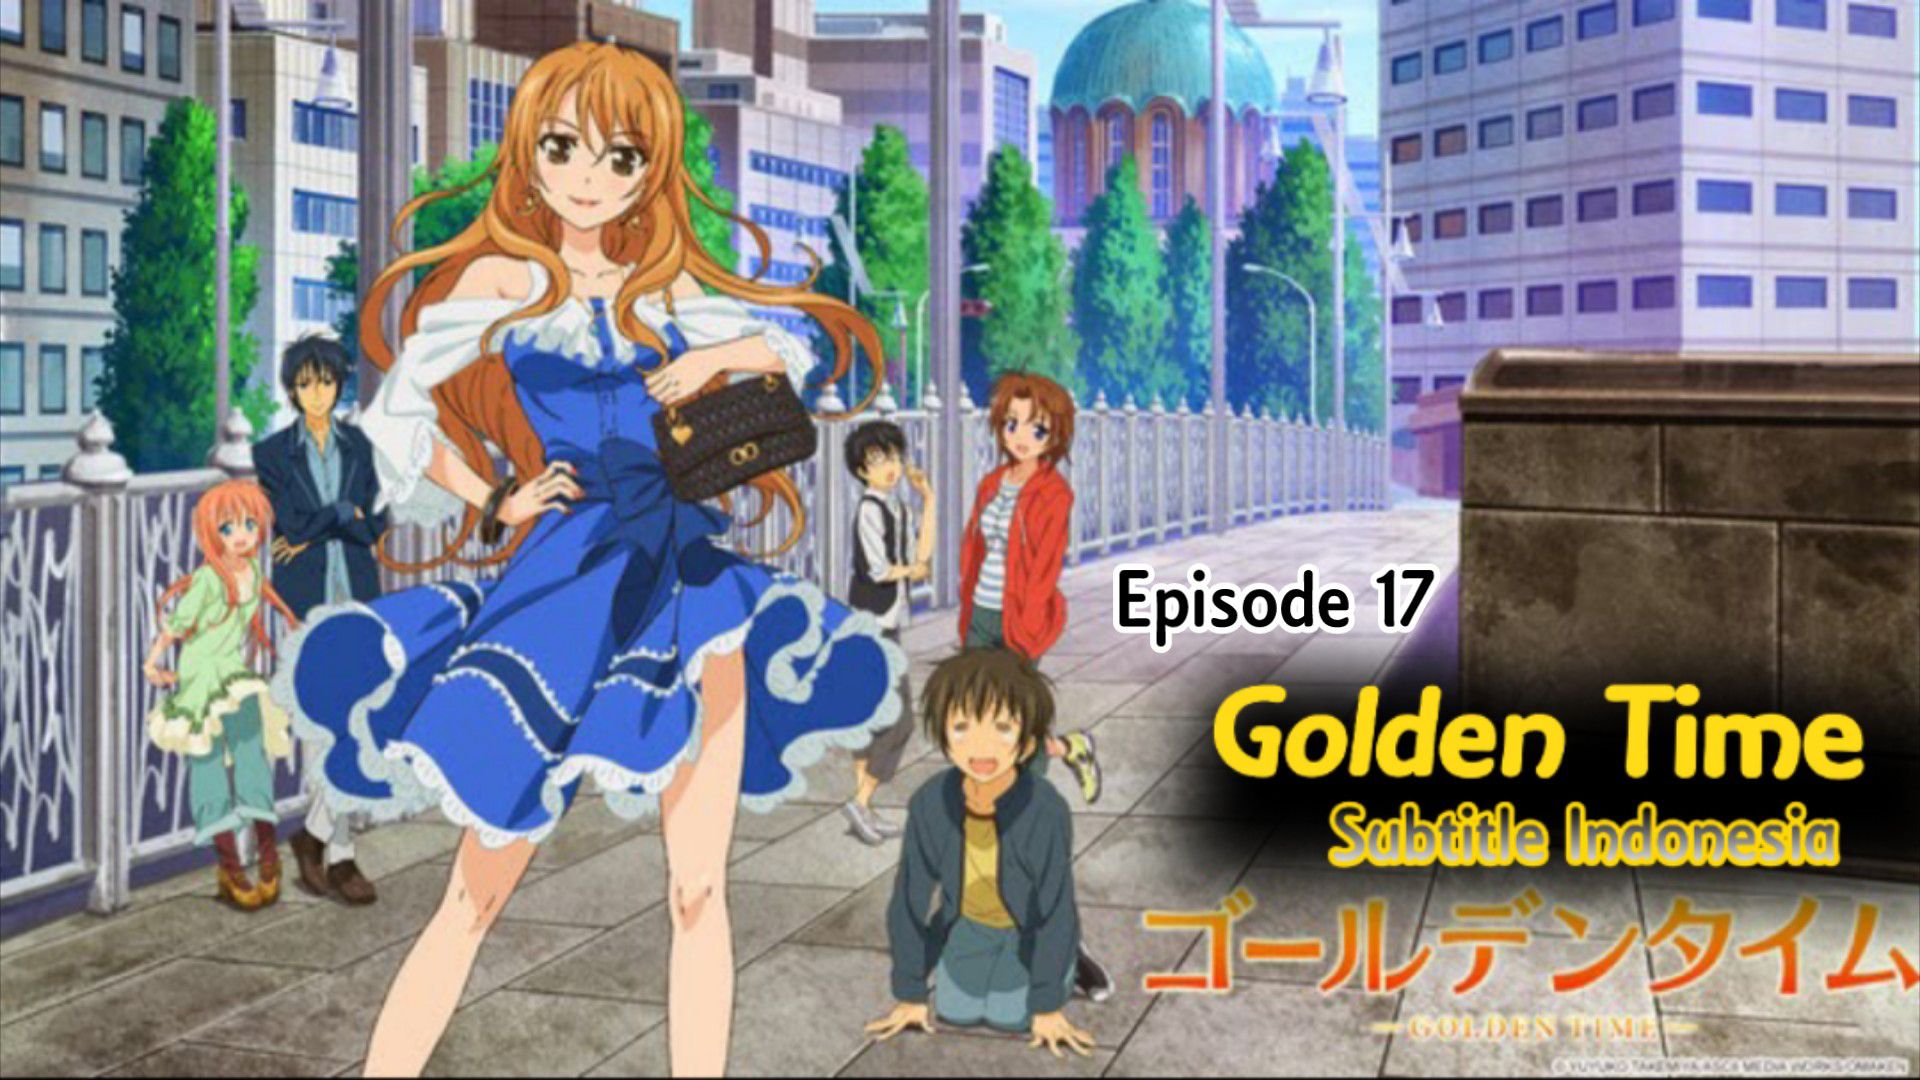 Golden Time Episode 17, Golden Time Epidode 17